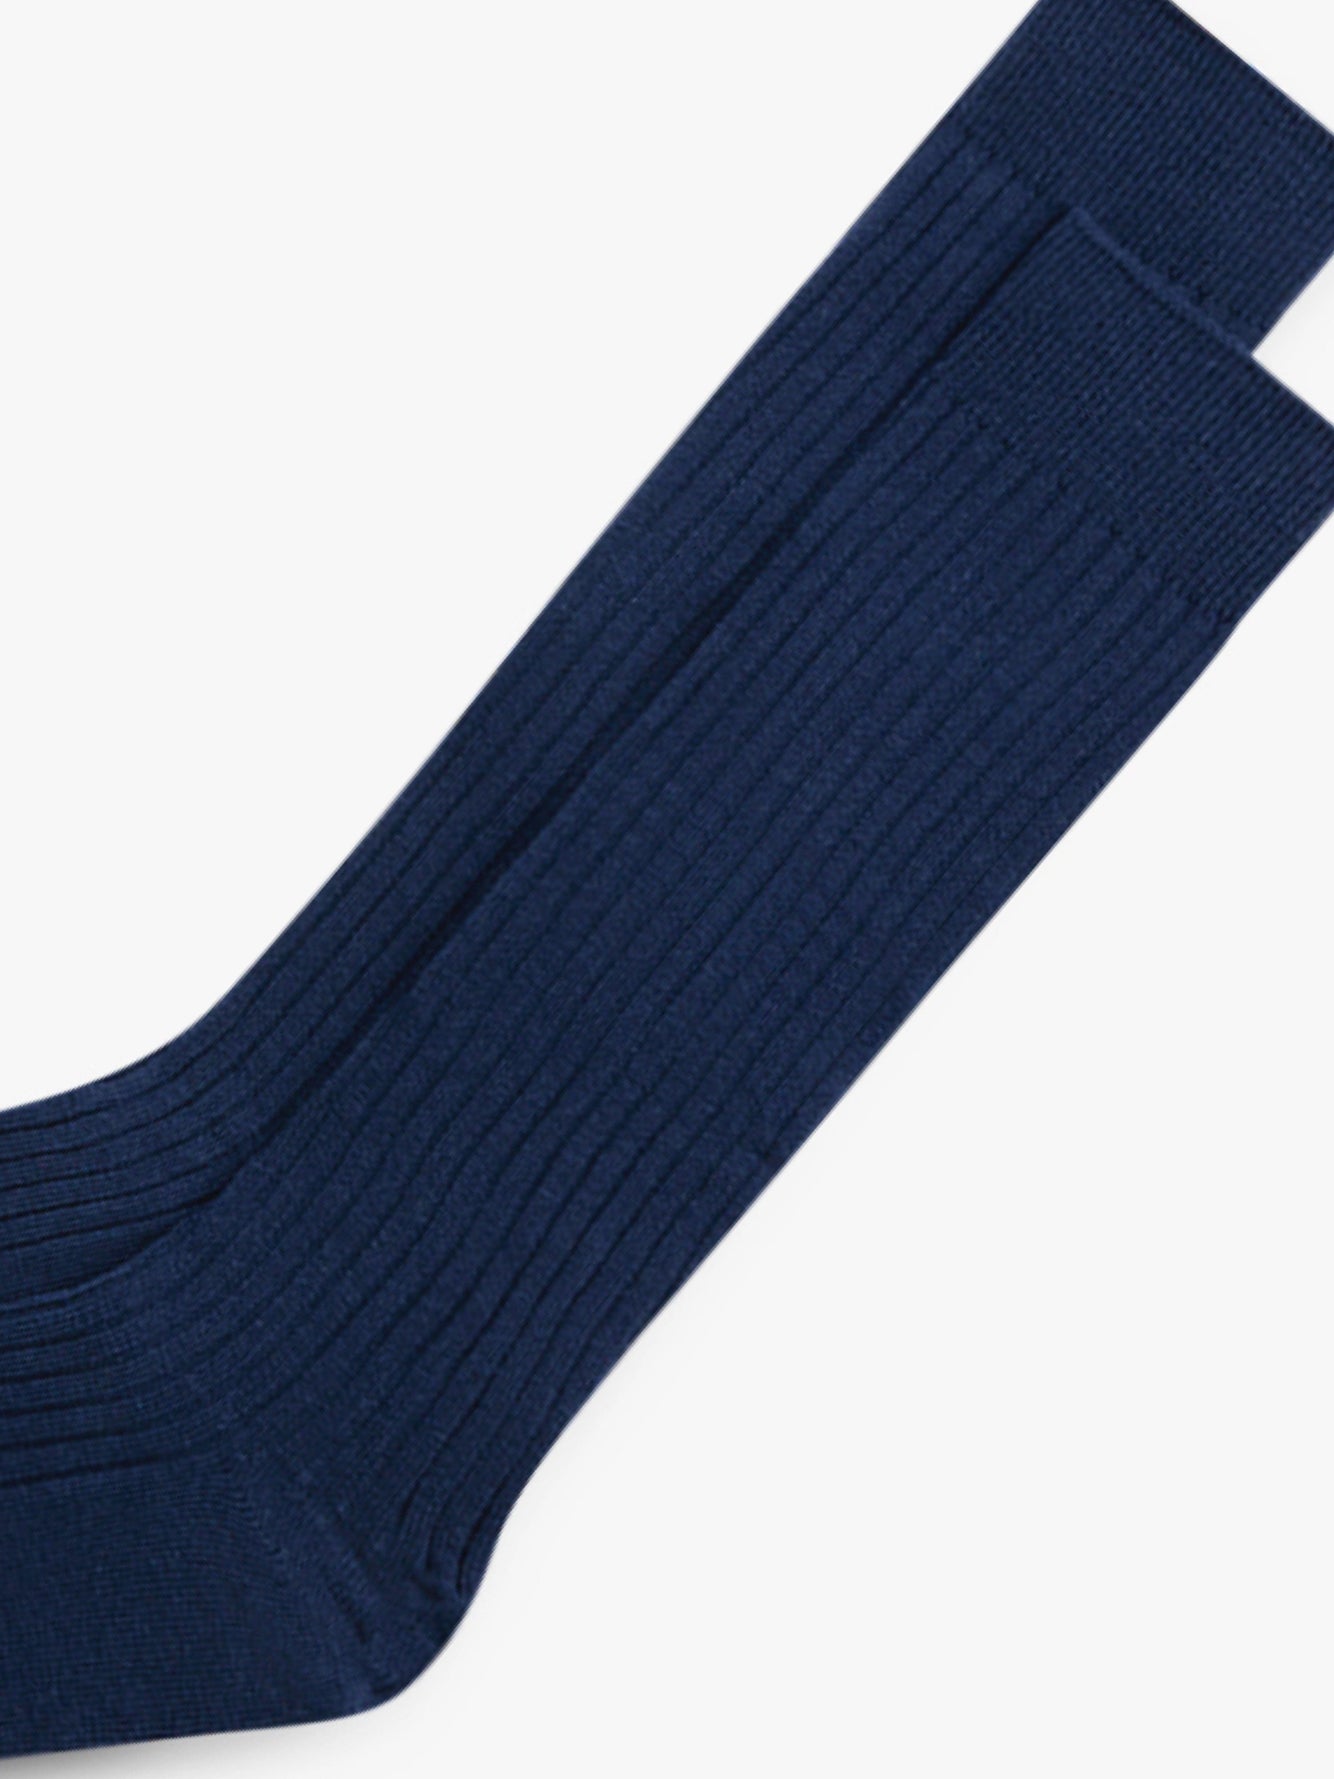 Grand Le Mar - Navy Ribbed Pima Cotton Socks